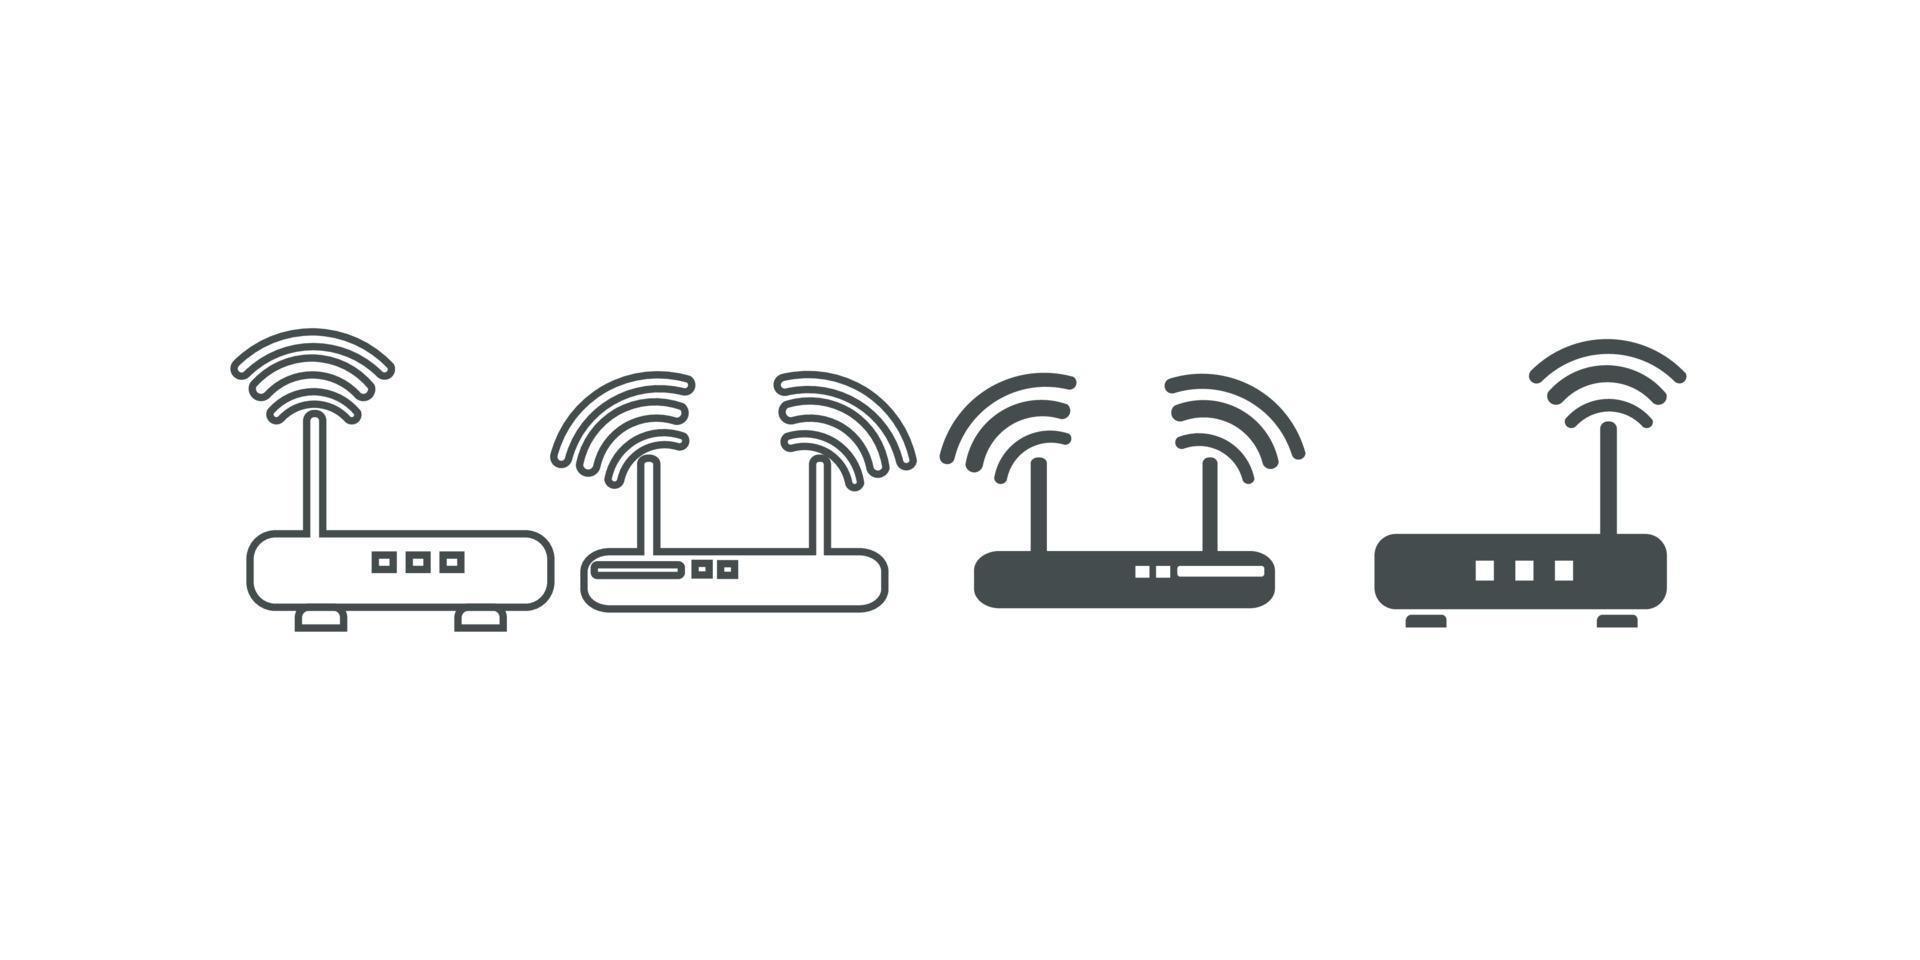 icona del router. disegno dell'illustrazione del modello vettoriale dell'icona del router wireless